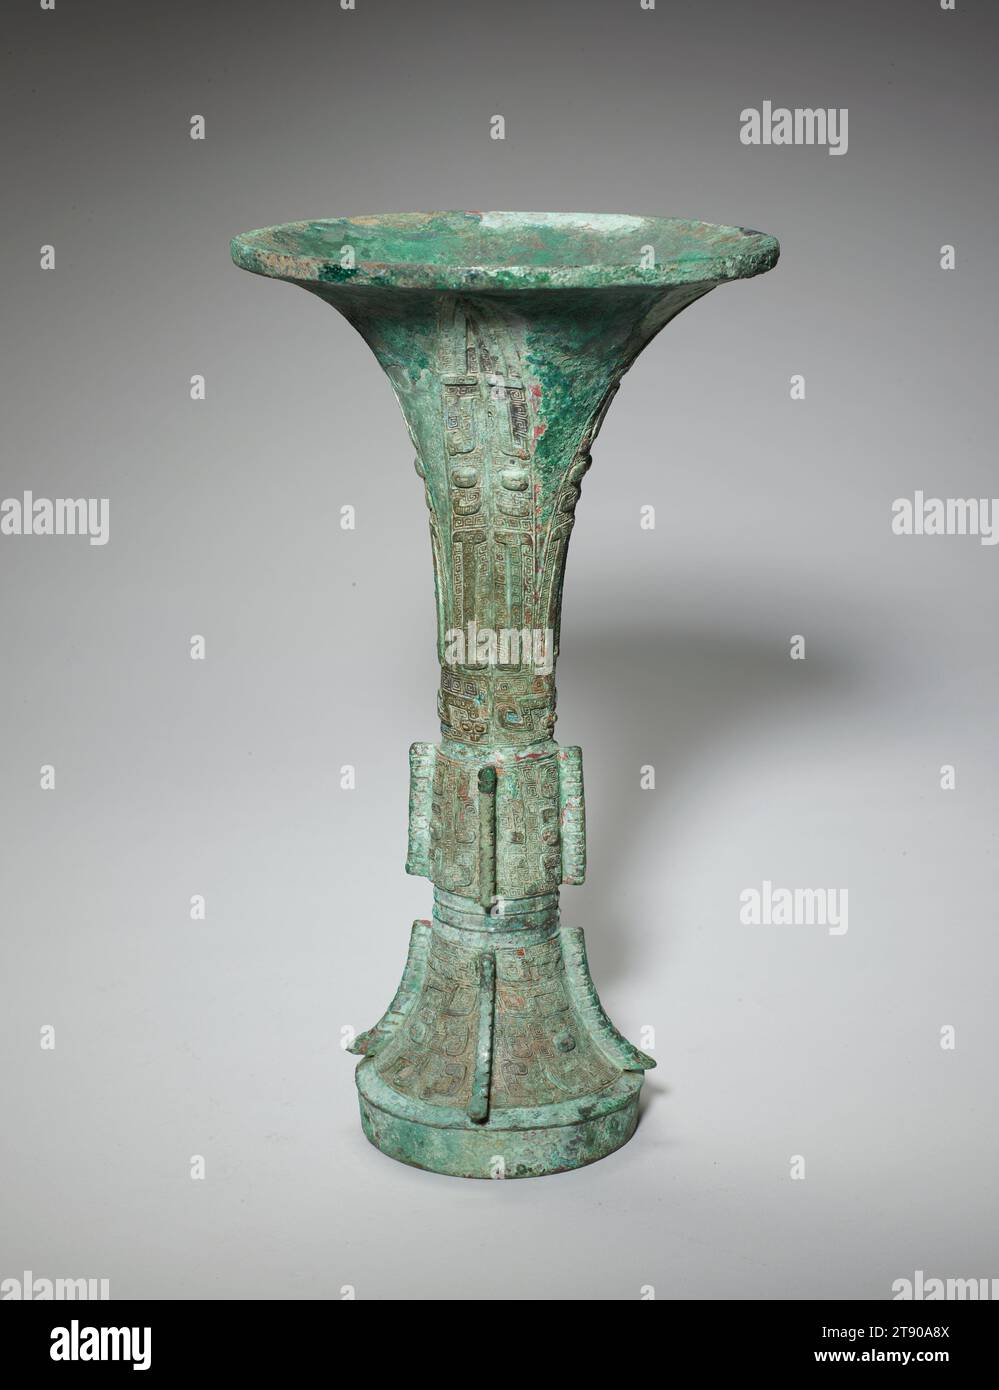 Gu-Weingefäß, 12.-11. Jahrhundert v. Chr., 11 3/4 x 6 5/8 Zoll, 3,3 lb. (29,85 x 16,83 cm, 1,5 kg), Bronze, China, 12.-11. Jahrhundert v. Chr., der Gu ist ein hoher Weinbecher mit einer ungewöhnlich straffen und anmutigen Silhouette – seine trompetenförmige Oberseite verjüngt sich zu einem schlanken Mittelteil, bevor sie sich wieder zu einer leicht ausgestellten Basis weitet. Archäologische Beweise zeigen, dass Bronzegu erstmals während der Erligang-Zeit (ca. 1500–1300 v. Chr.) der Shang-Dynastie auftrat. Die Gu erfreute sich während der Shang-Dynastie (ca. 1600–1046 v. Chr.) seiner größten Popularität, wurde aber im frühen westlichen Zhou weniger populär Stockfoto